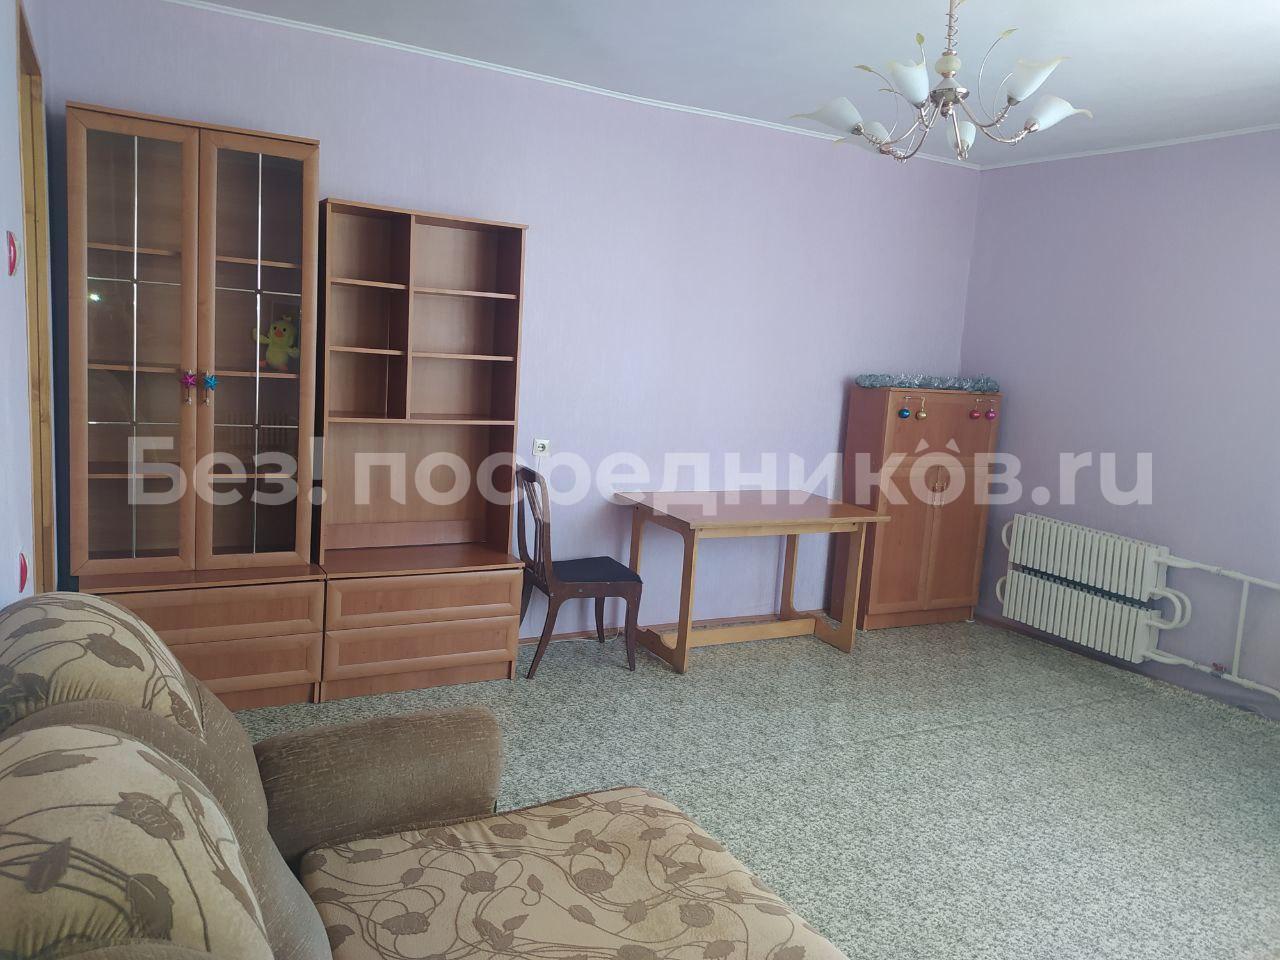 Купить дом в Казани недорого без посредников